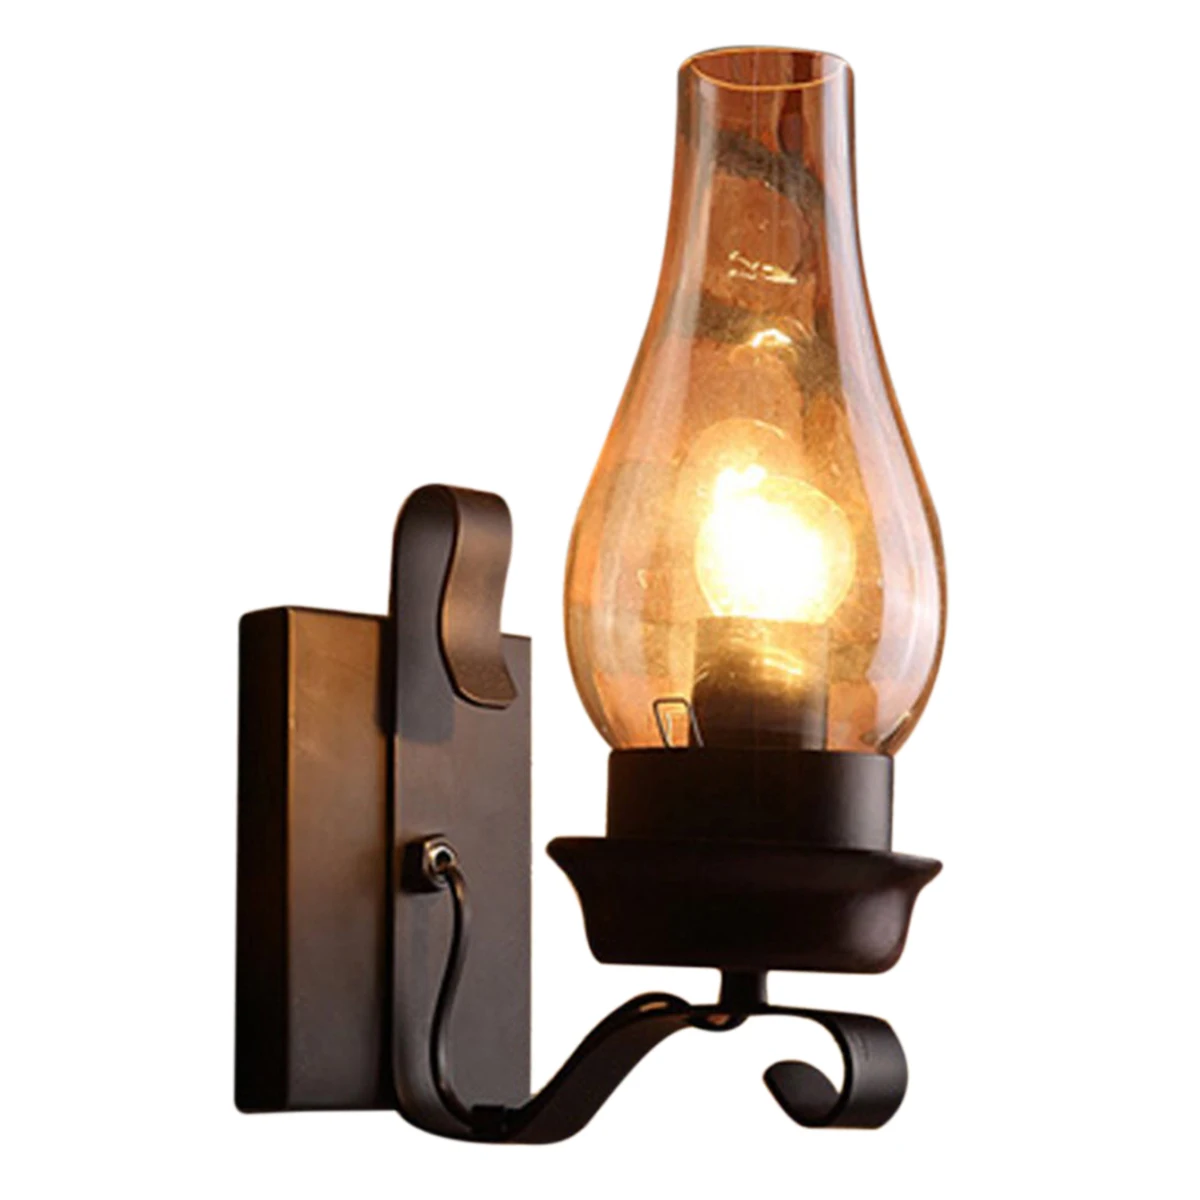 Ретро деревянный настенный светильник для гостиной, деревянные светодиодные бра, кафе-бар, прикроватная тумбочка для спальни, домашний декор в индустриальном стиле, настенные светильники 0